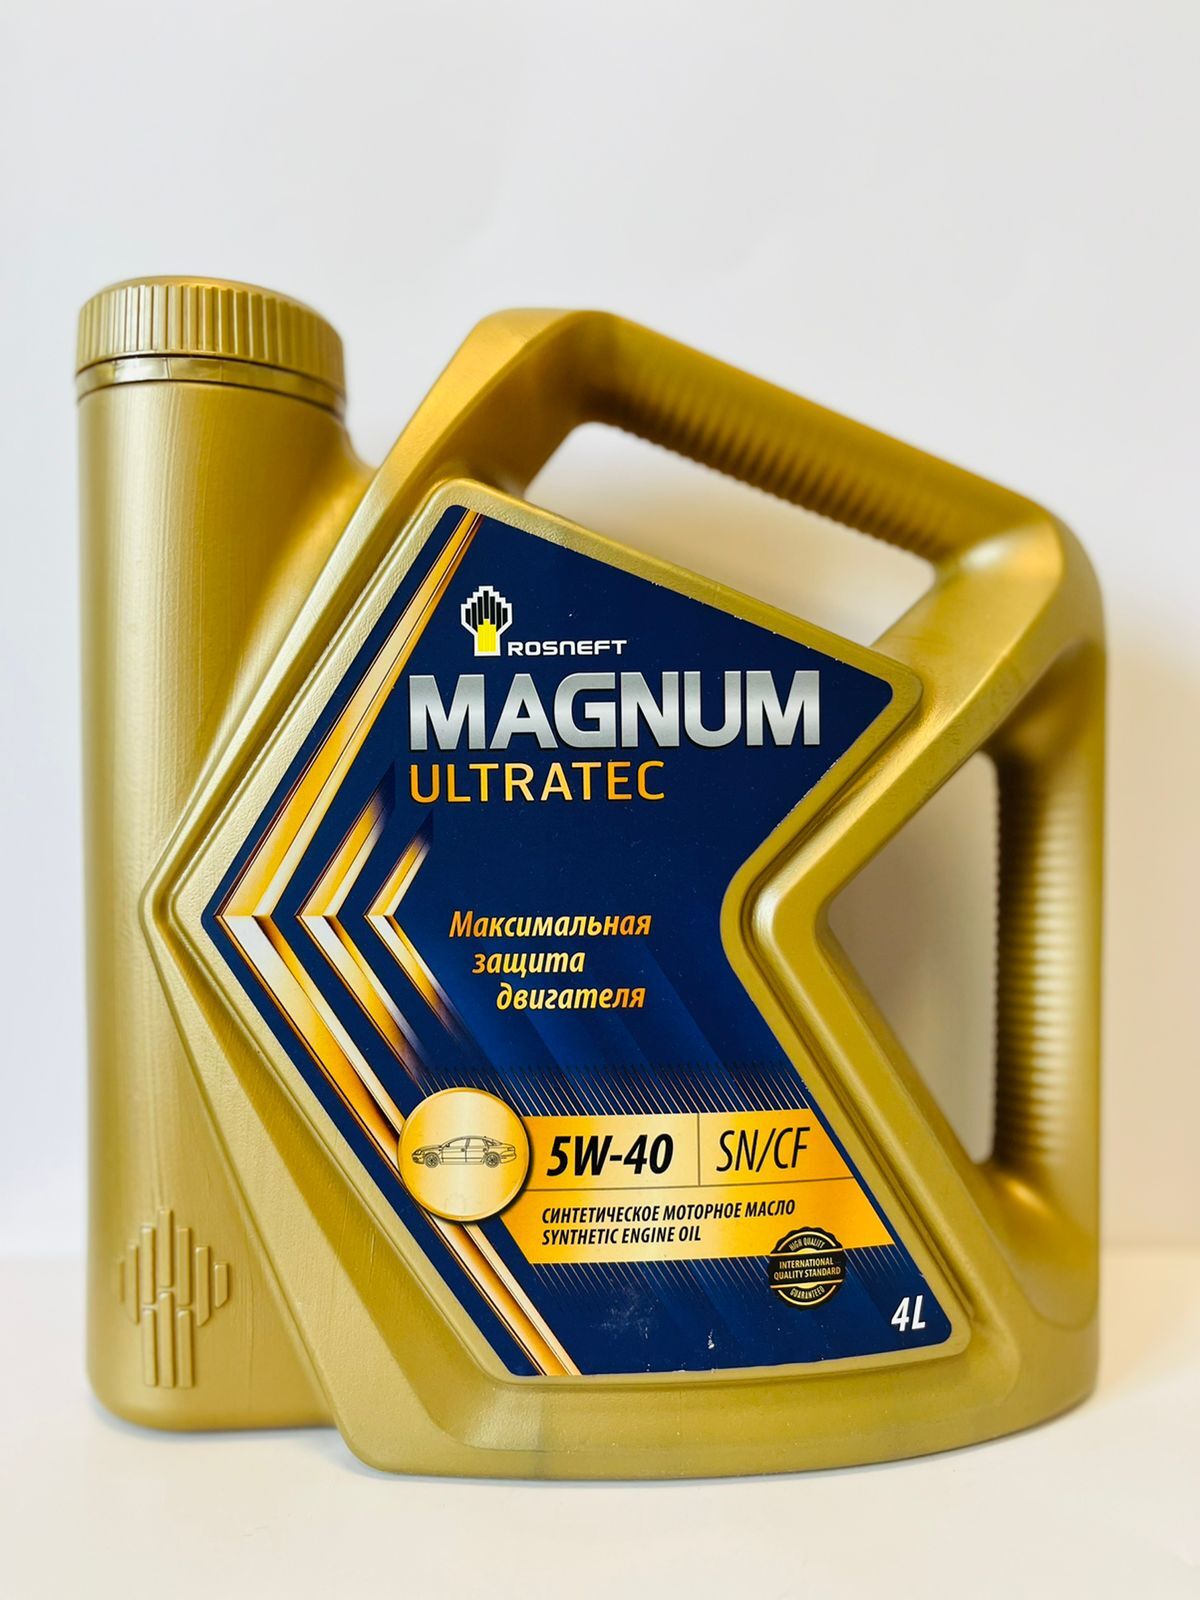 Цена масла магнум ультратек. Rosneft Magnum Ultratec 5w-40. Роснефть Магнум Ультратек 5 40. Масло Роснефть 5w40 синтетика. Магнум 5w40 полусинтетика.